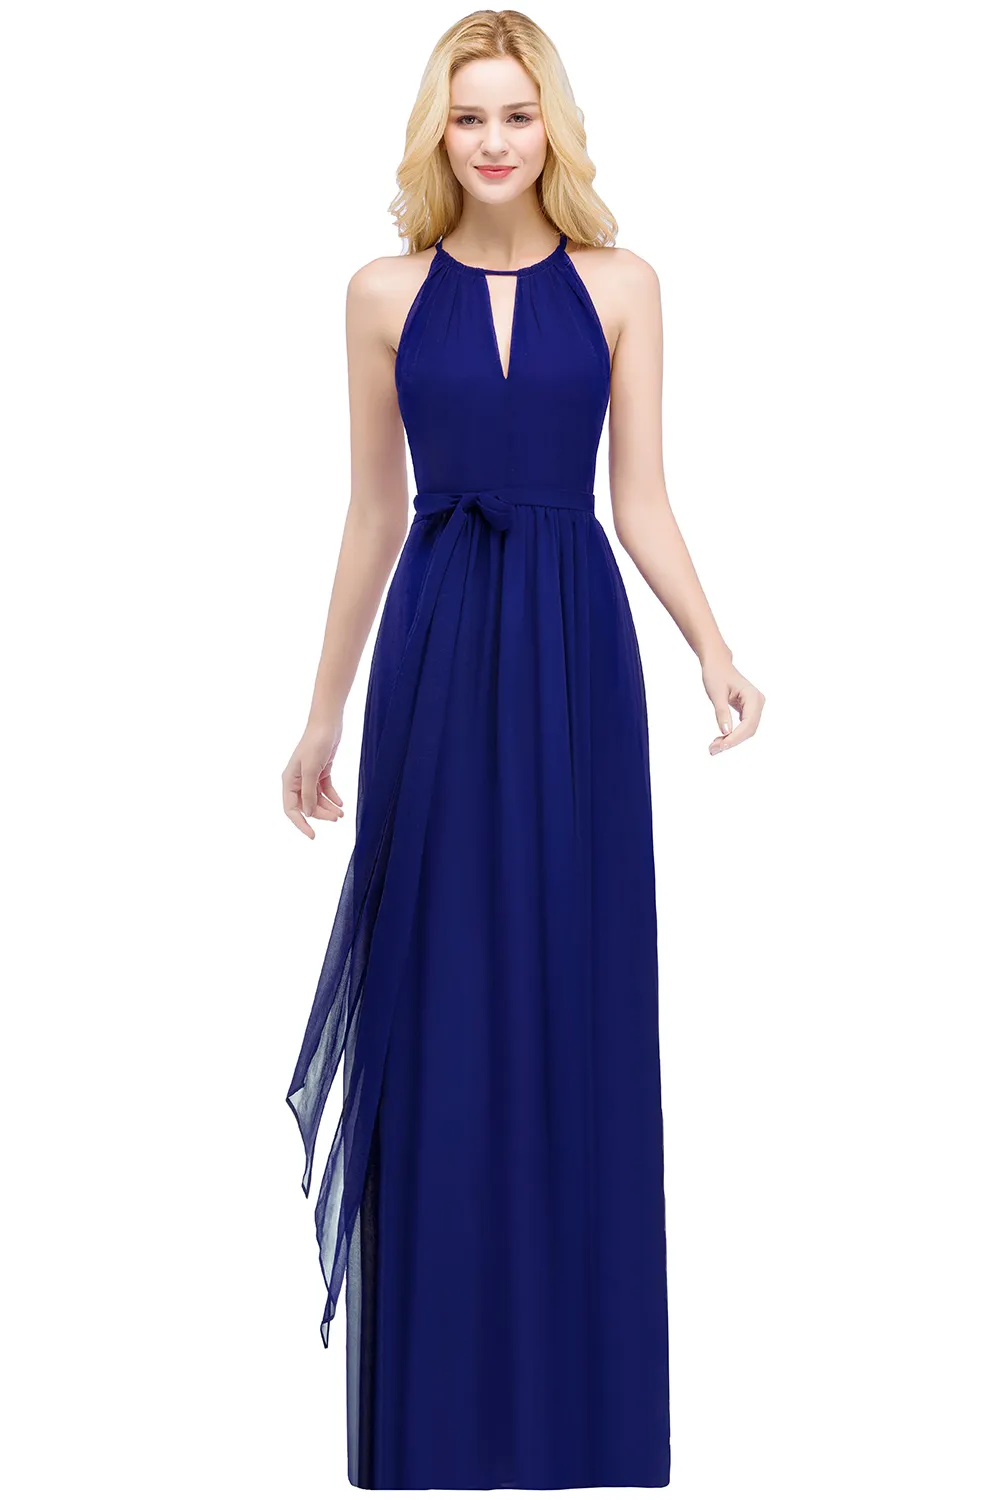 Сток элегантные вечерние платья Halter Бургундия темно-синий синий длинный линейный шифон дремон платья формальный платье Party CPS868